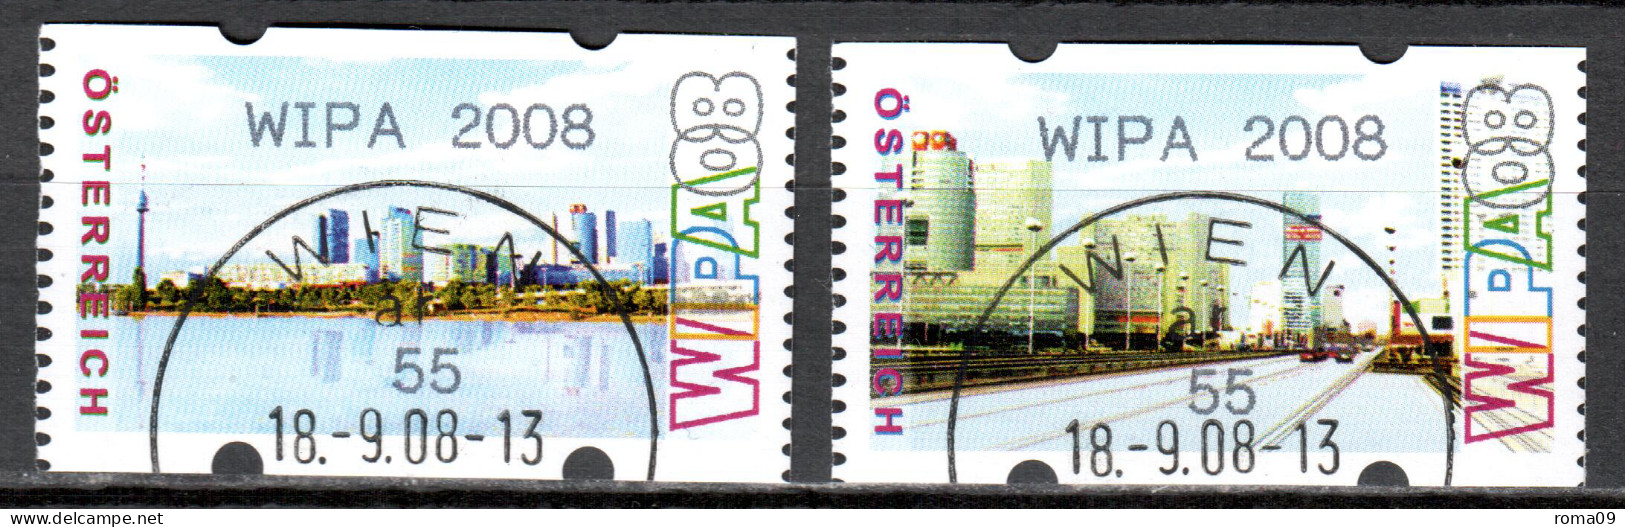 MiNr. ATM 12 + 13  C, Eindruck: „WIPA 2008“; Intern. Briefmarkenausstellung WIPA 2008, Wien: Stadtansichten; Gest. - Machine Labels [ATM]